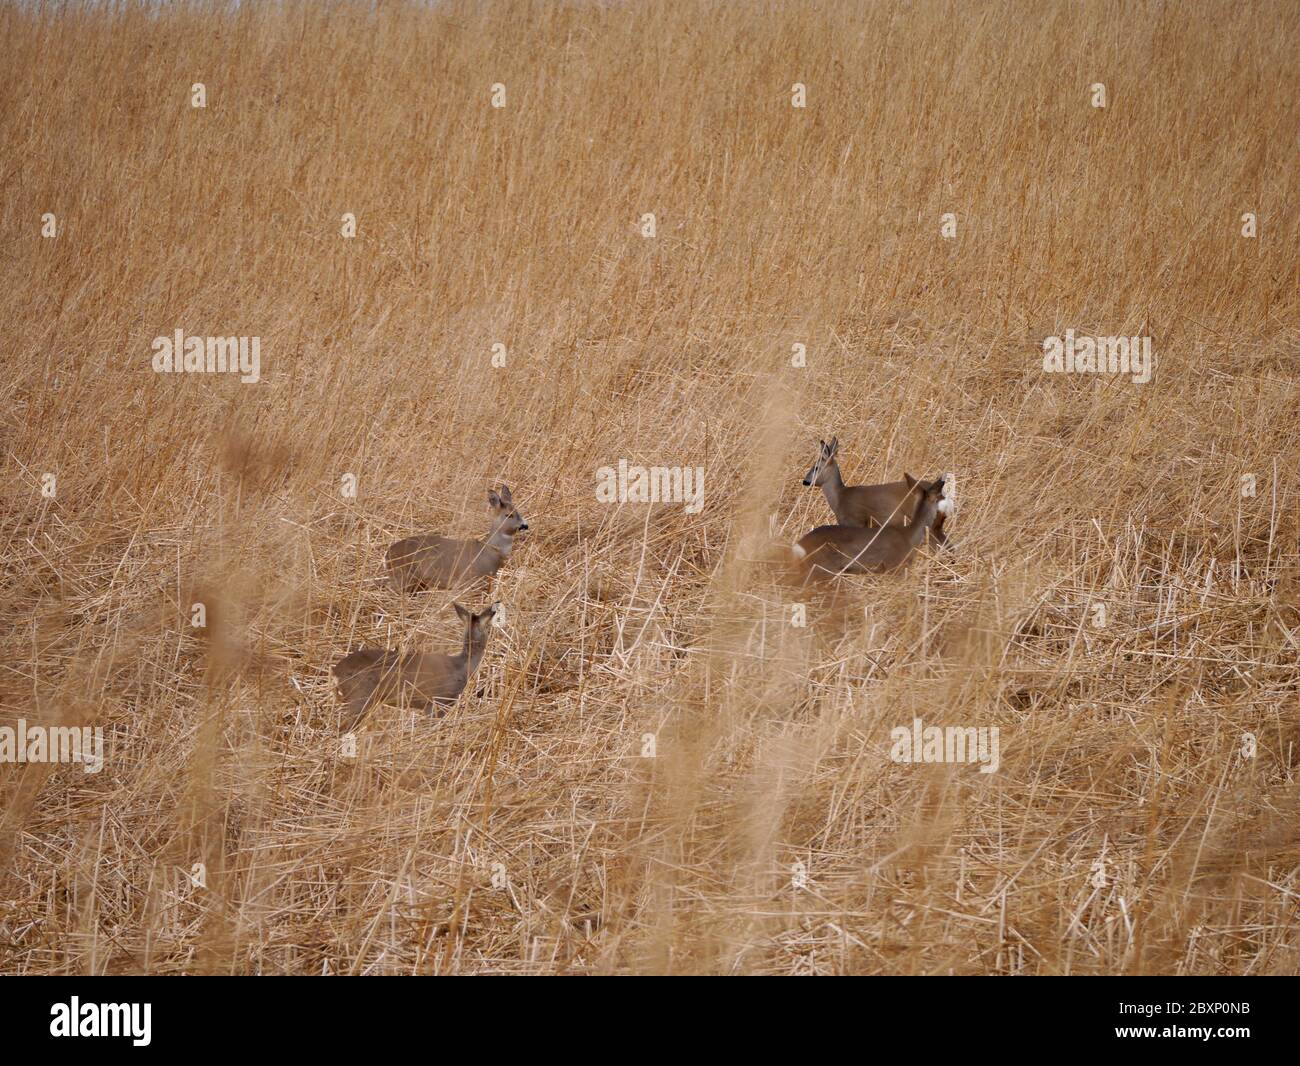 European roe deer in a field Stock Photo